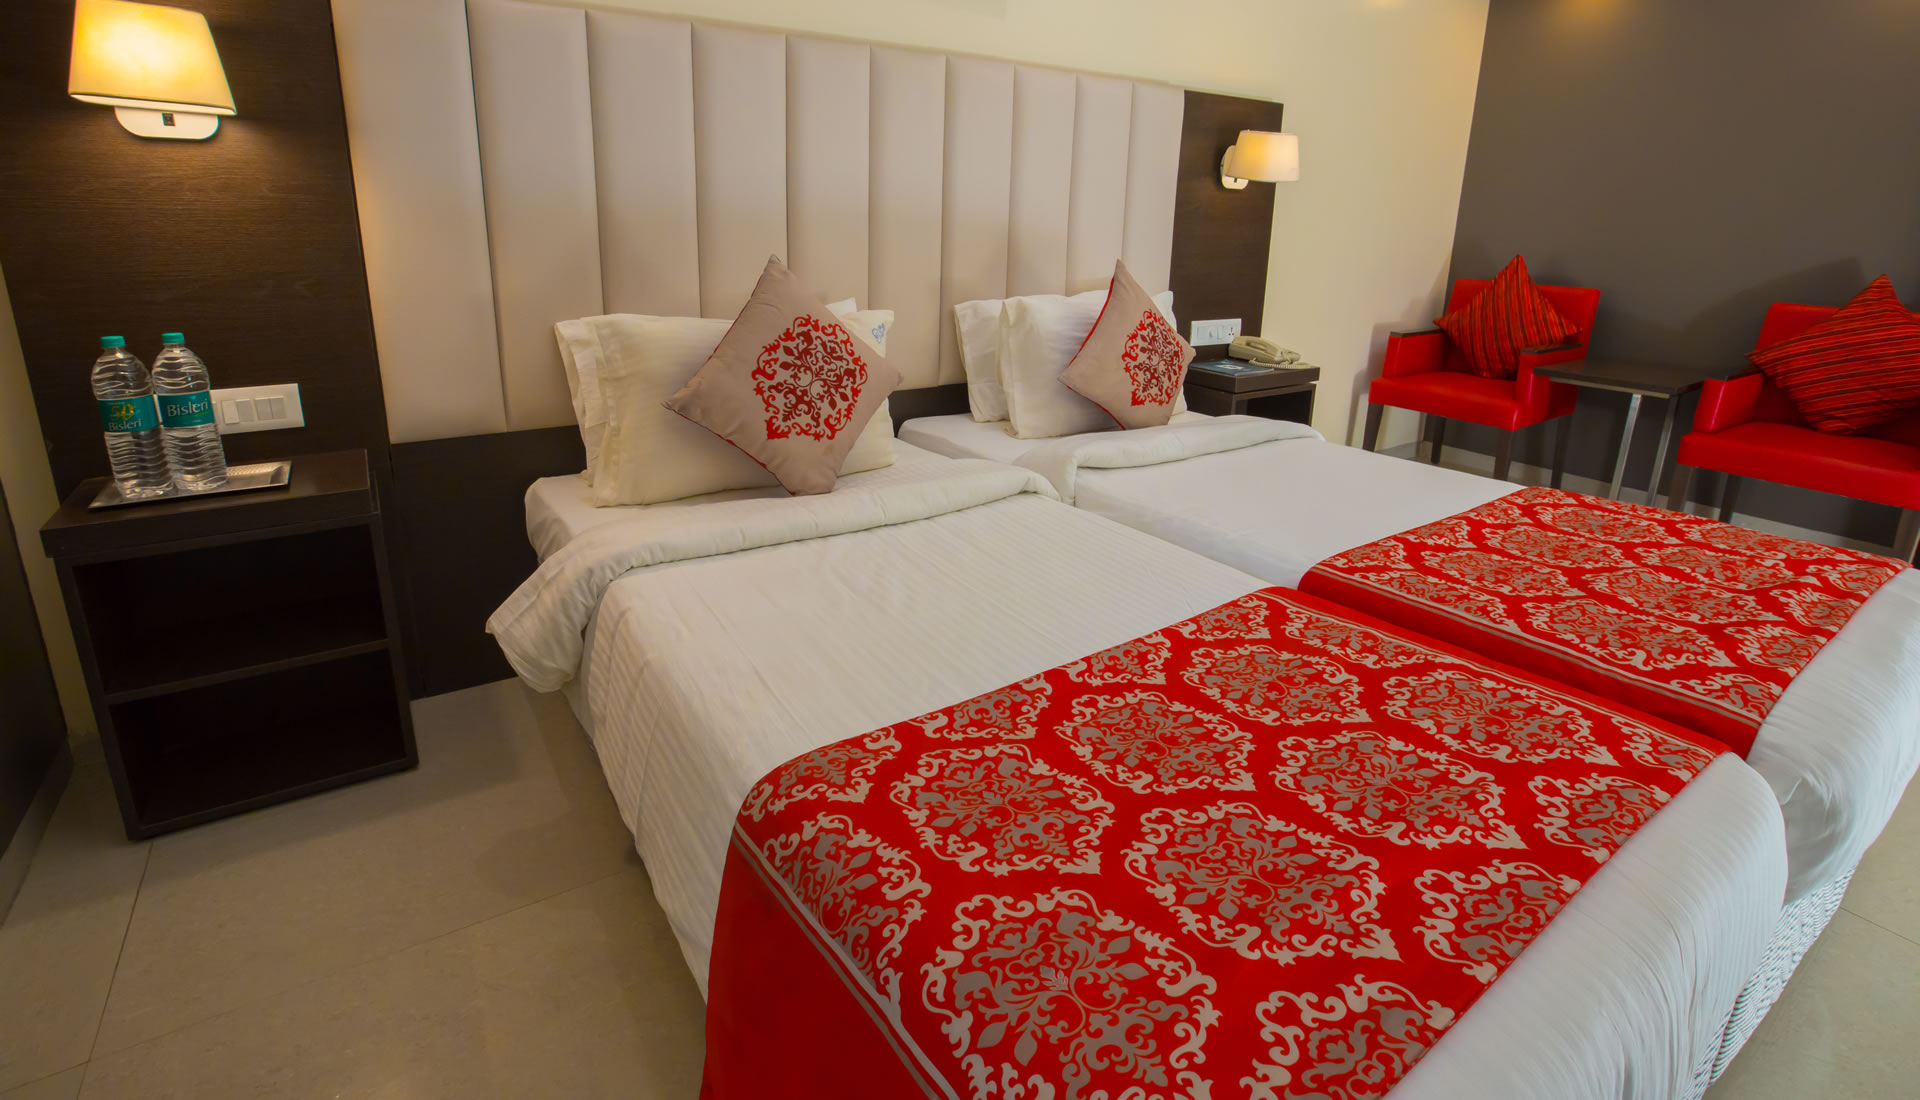 Hotels near Palani temple | Palani online room booking - Ganpat Grand,Palani ,Hotels & Resorts,Hotels,77traders